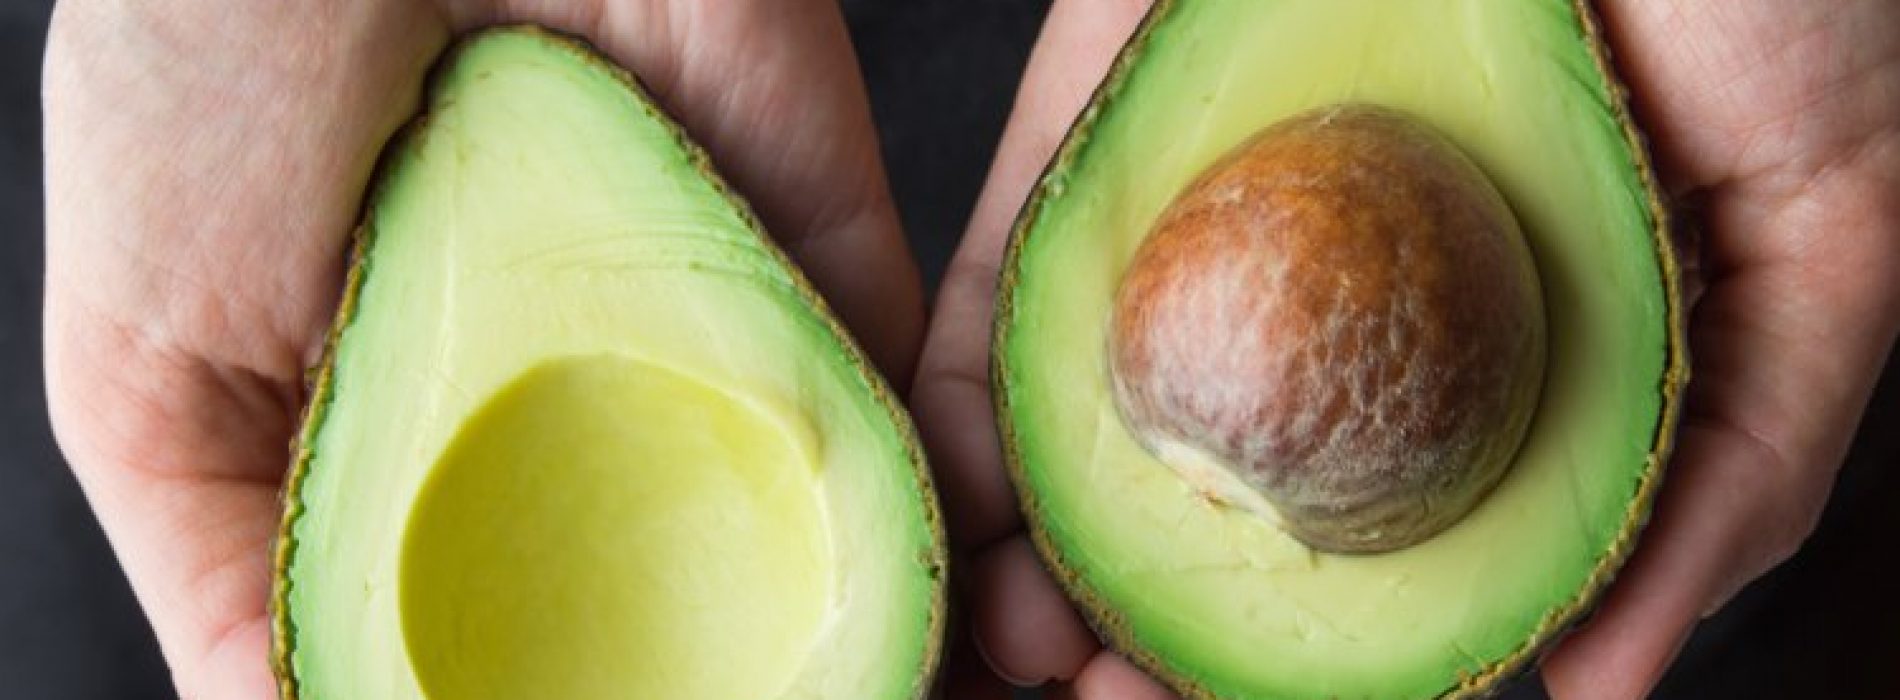 Avocado zaden bevatten verbindingen die ontstekingen verminderen